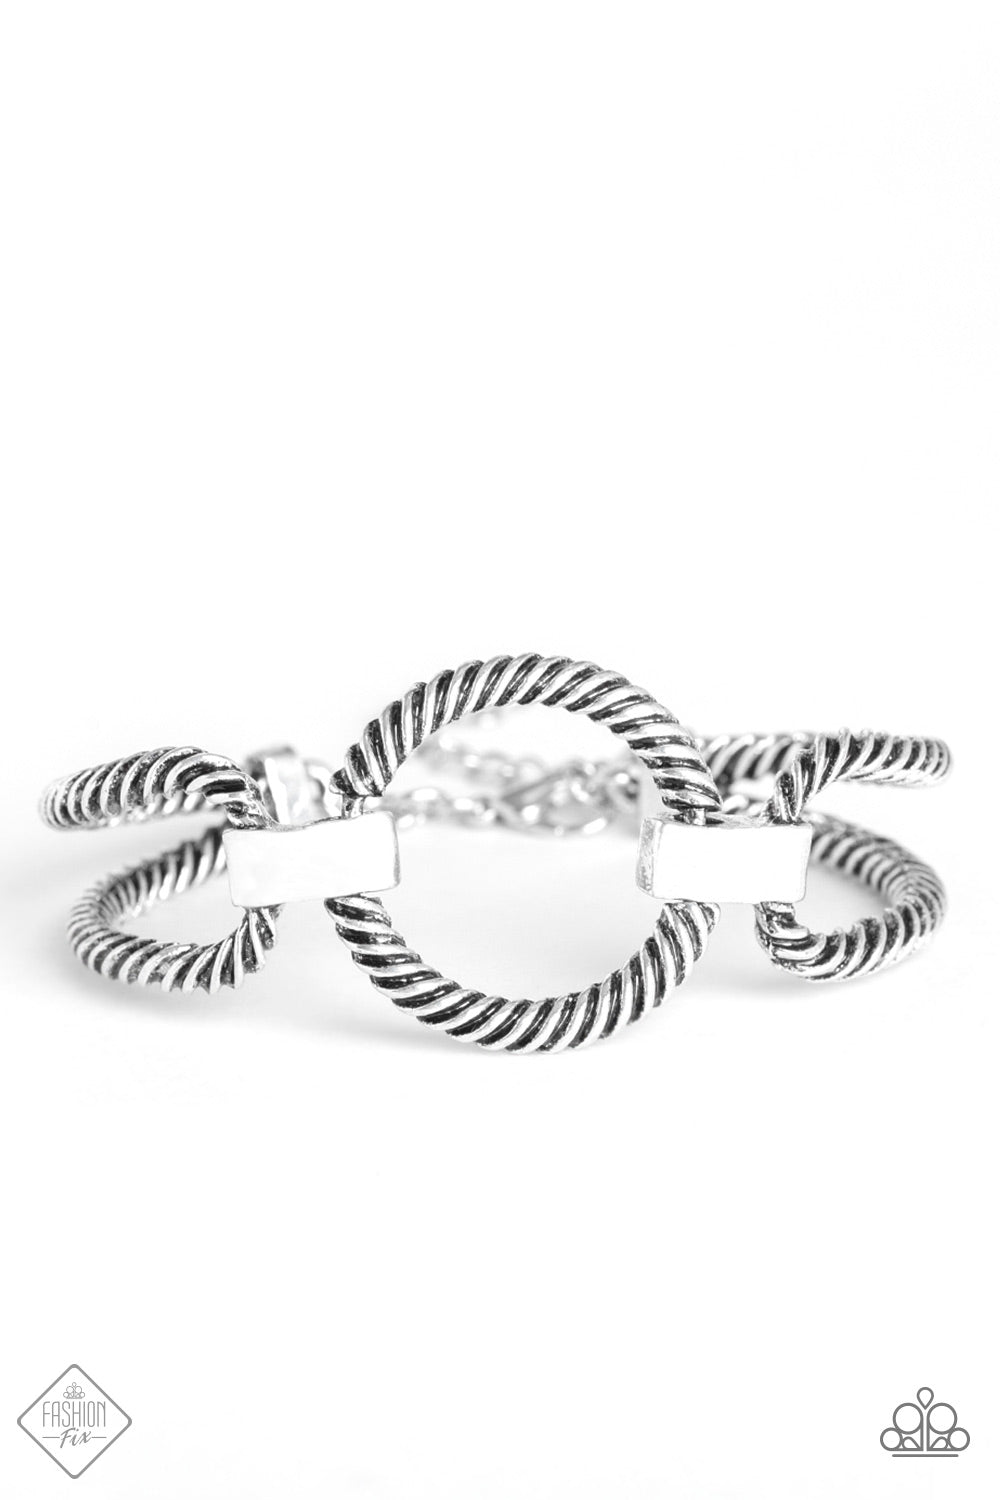 Desert Cat - Silver bracelet